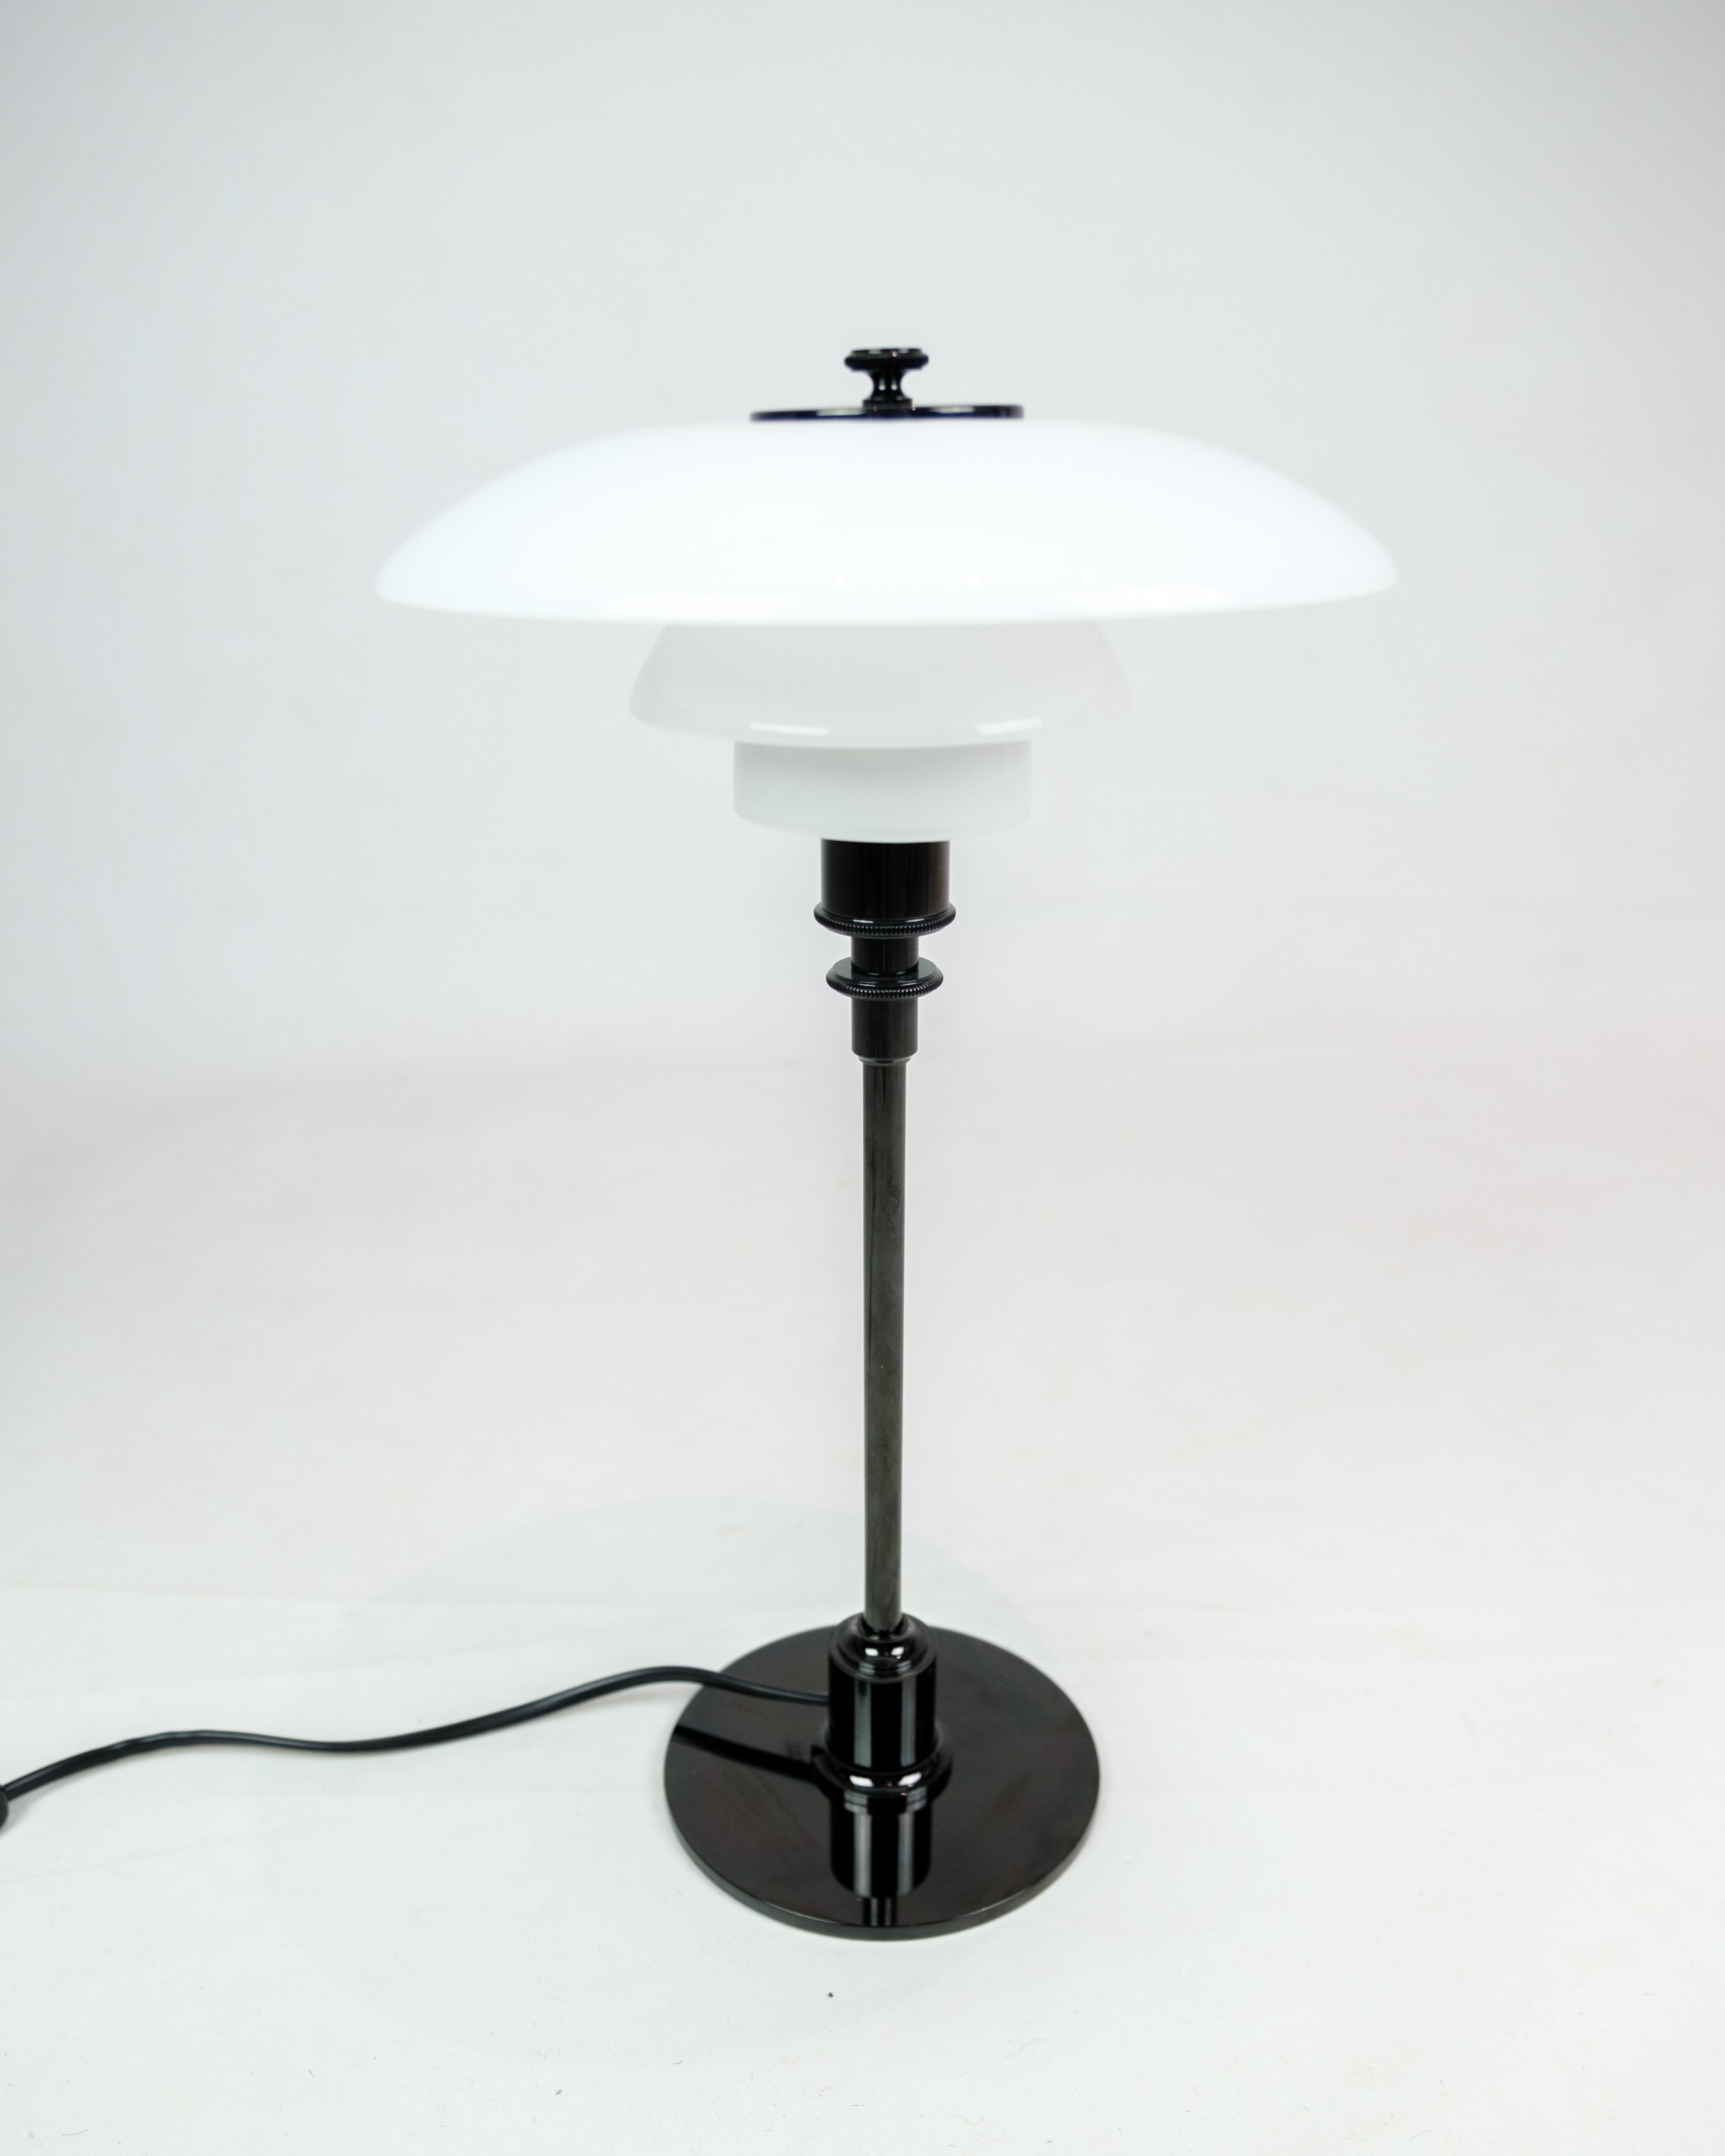 Découvrez l'élégance intemporelle du design emblématique de Poul Henningsen avec cette lampe de table, modèle 3/2, au design métallisé noir, fabriquée par Louis Poulsen. Cette lampe n'est pas seulement une source de lumière, c'est un chef-d'œuvre du